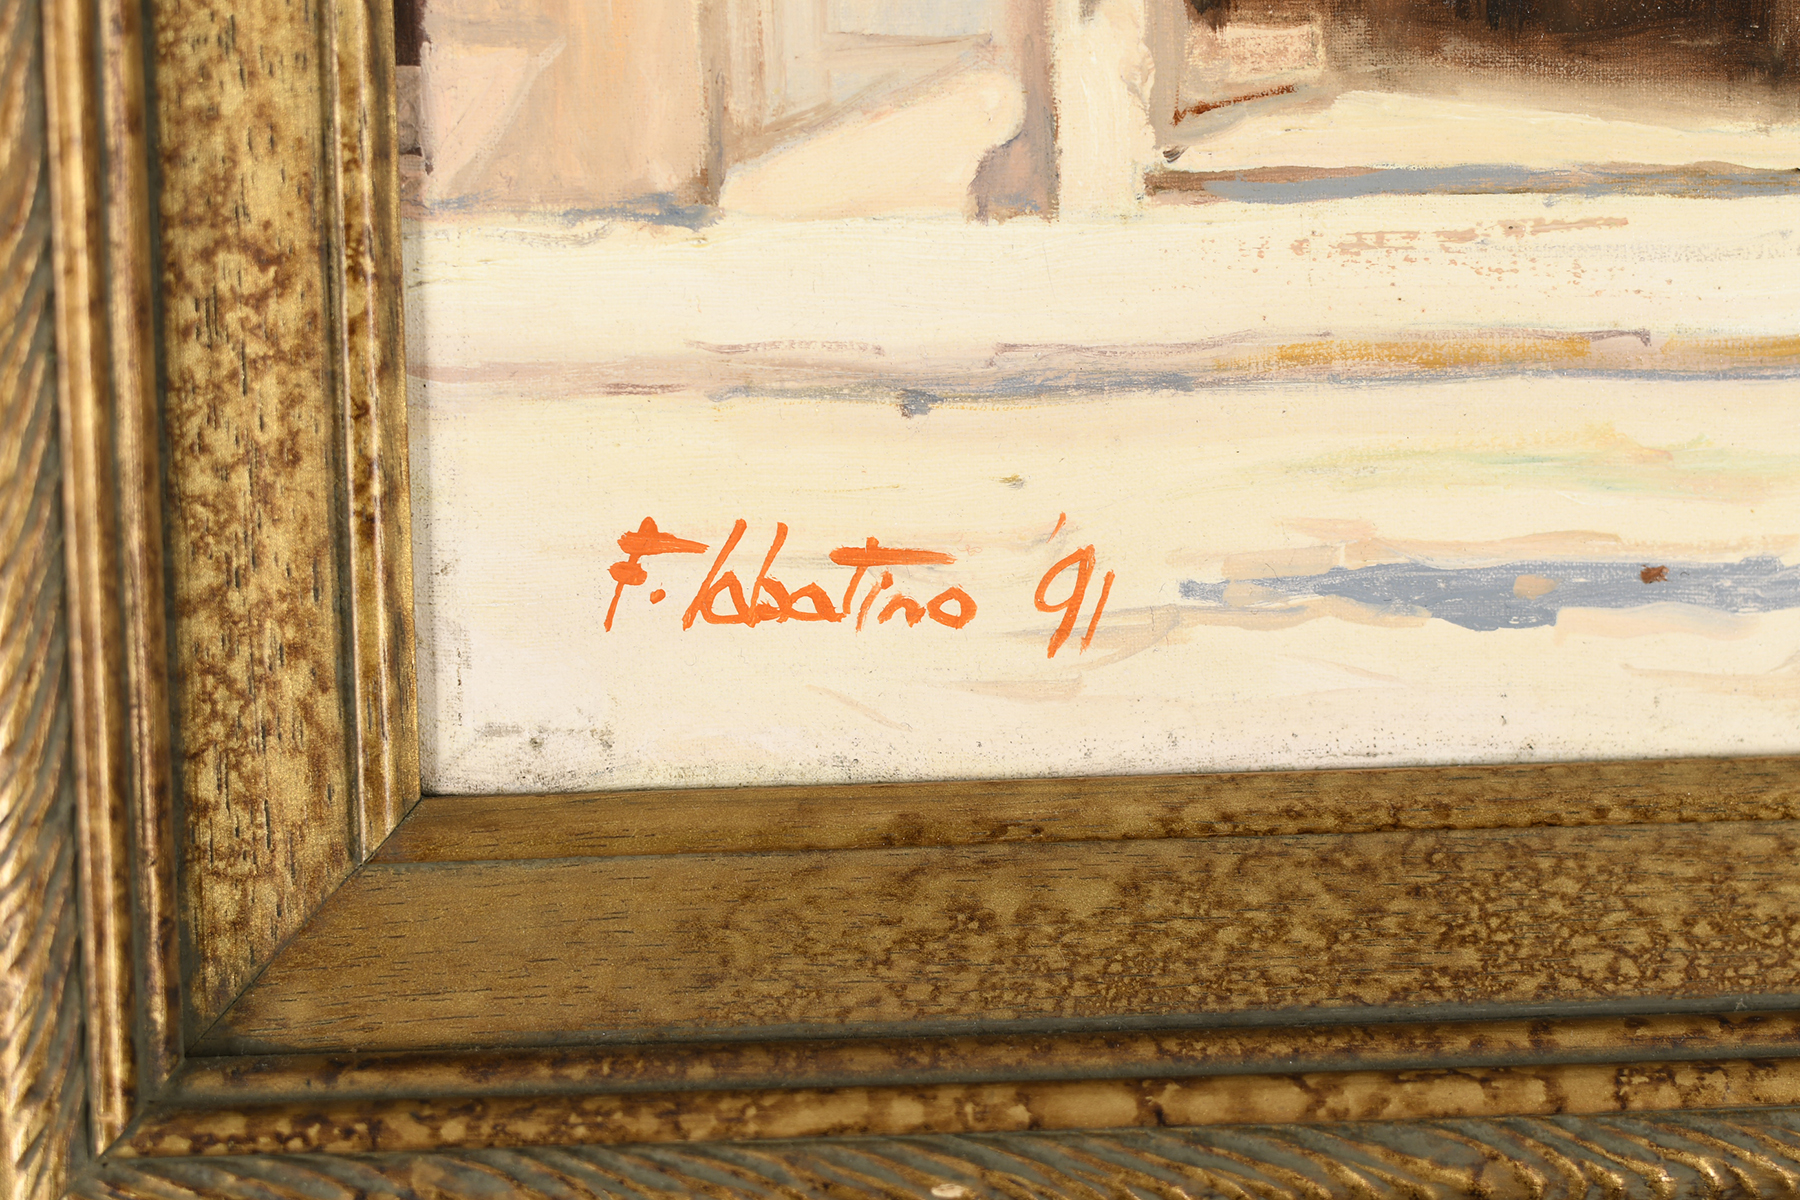 Original Oil on Canvas ""Roberta Di Camerino"" by F. Labatino - Image 4 of 5